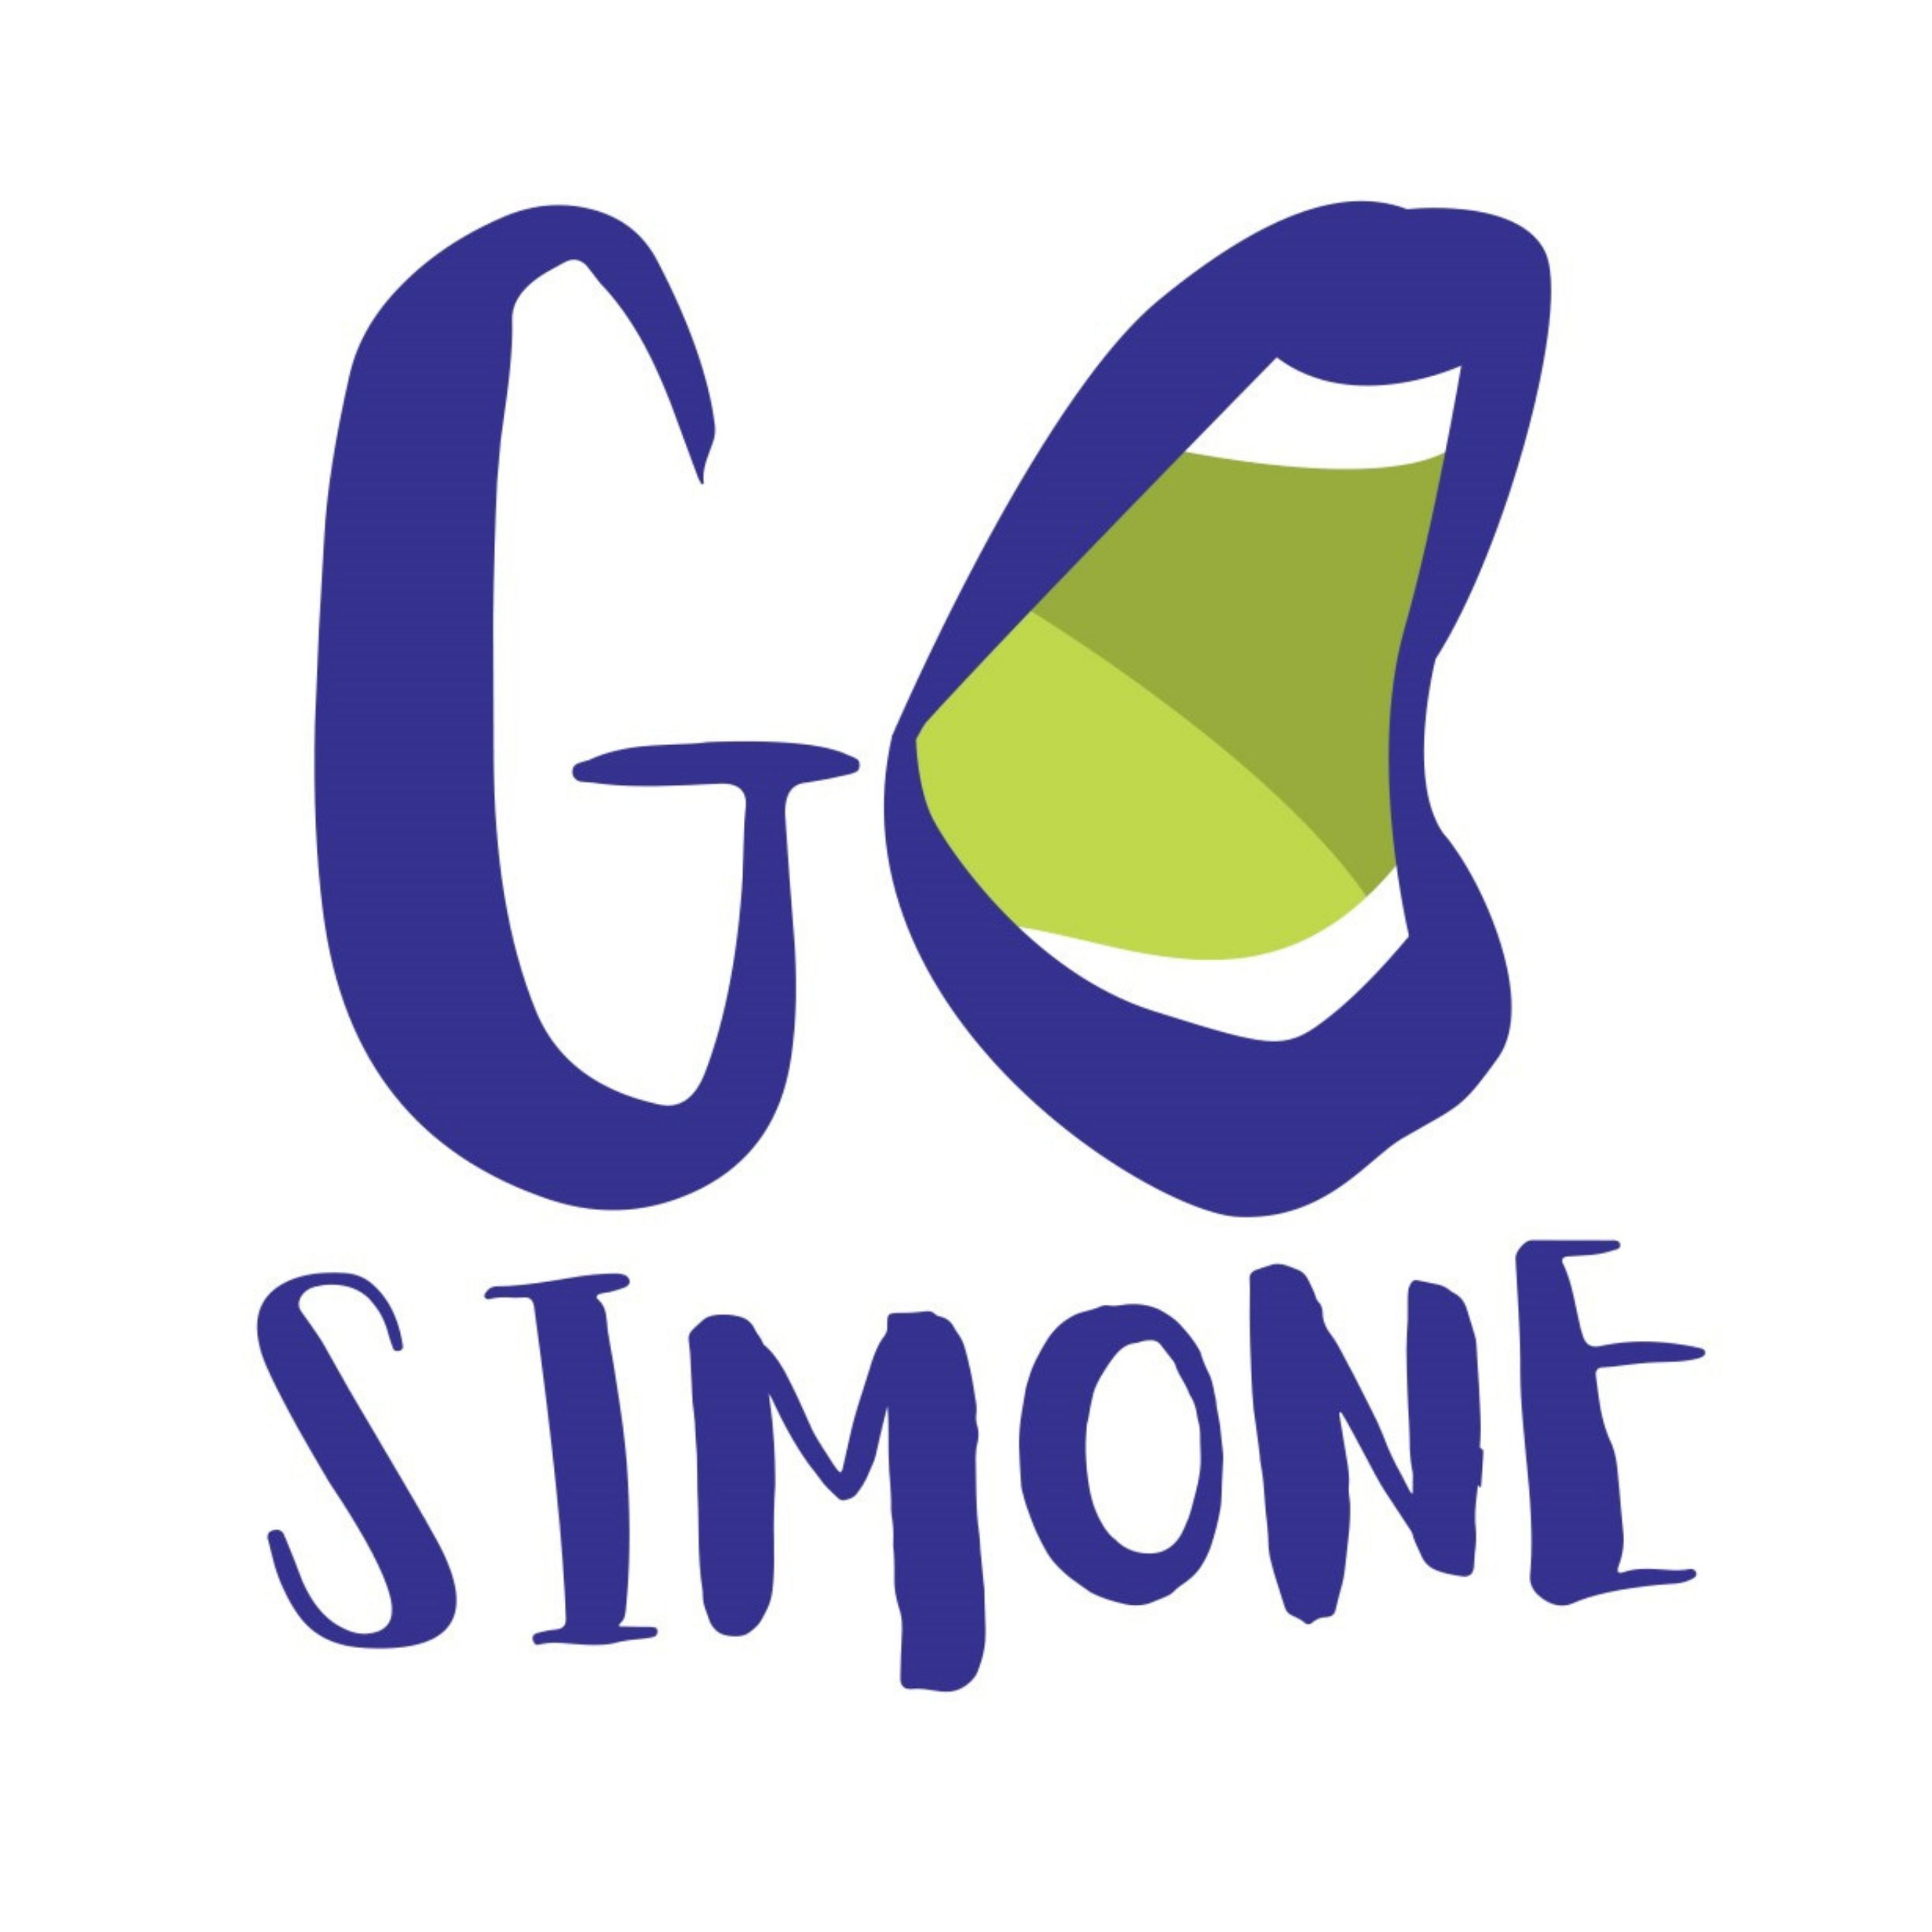 Go Simone